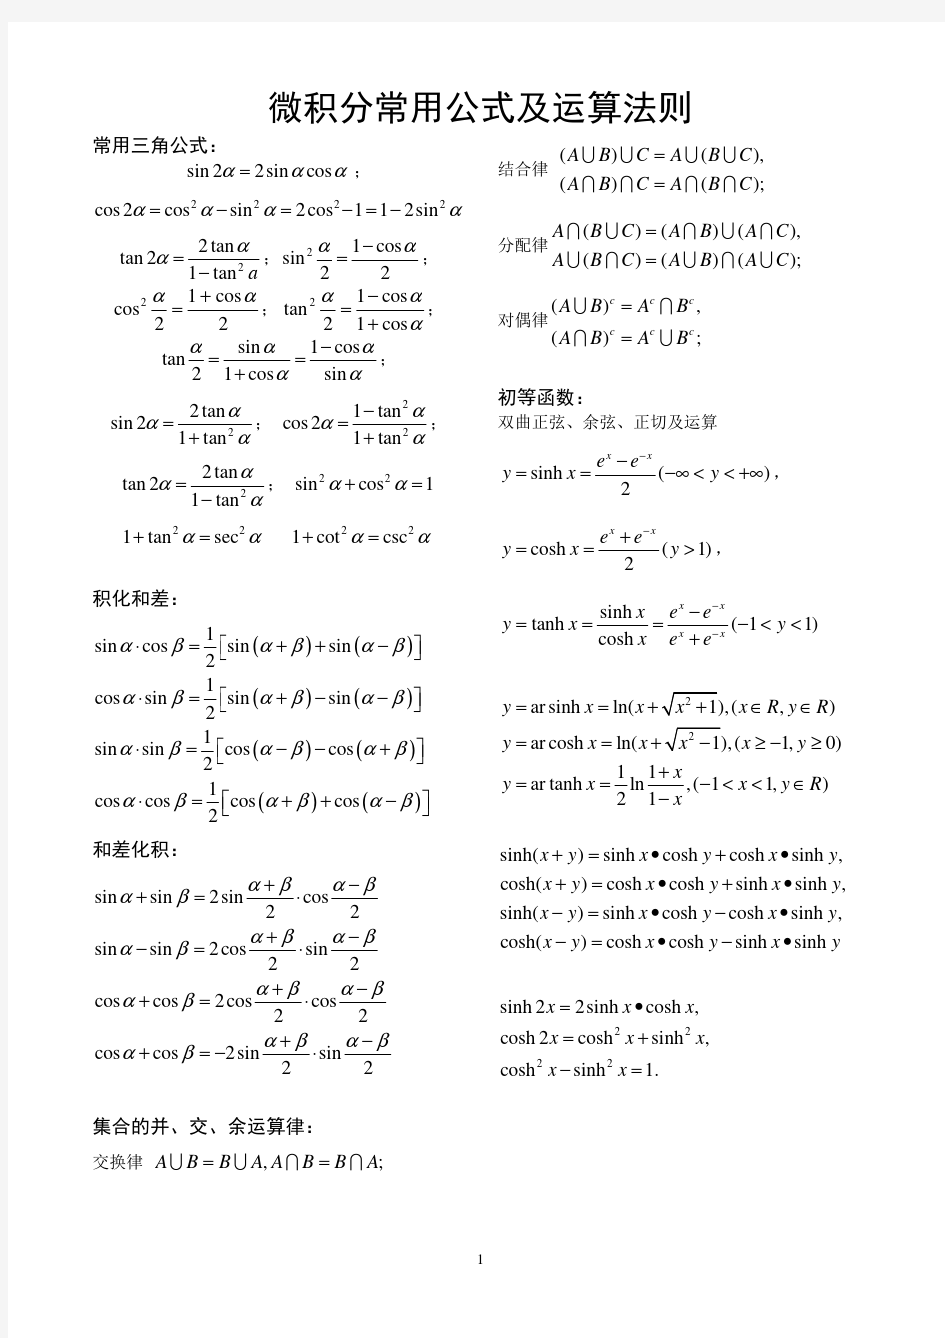 微积分常用公式及运算法则(上)